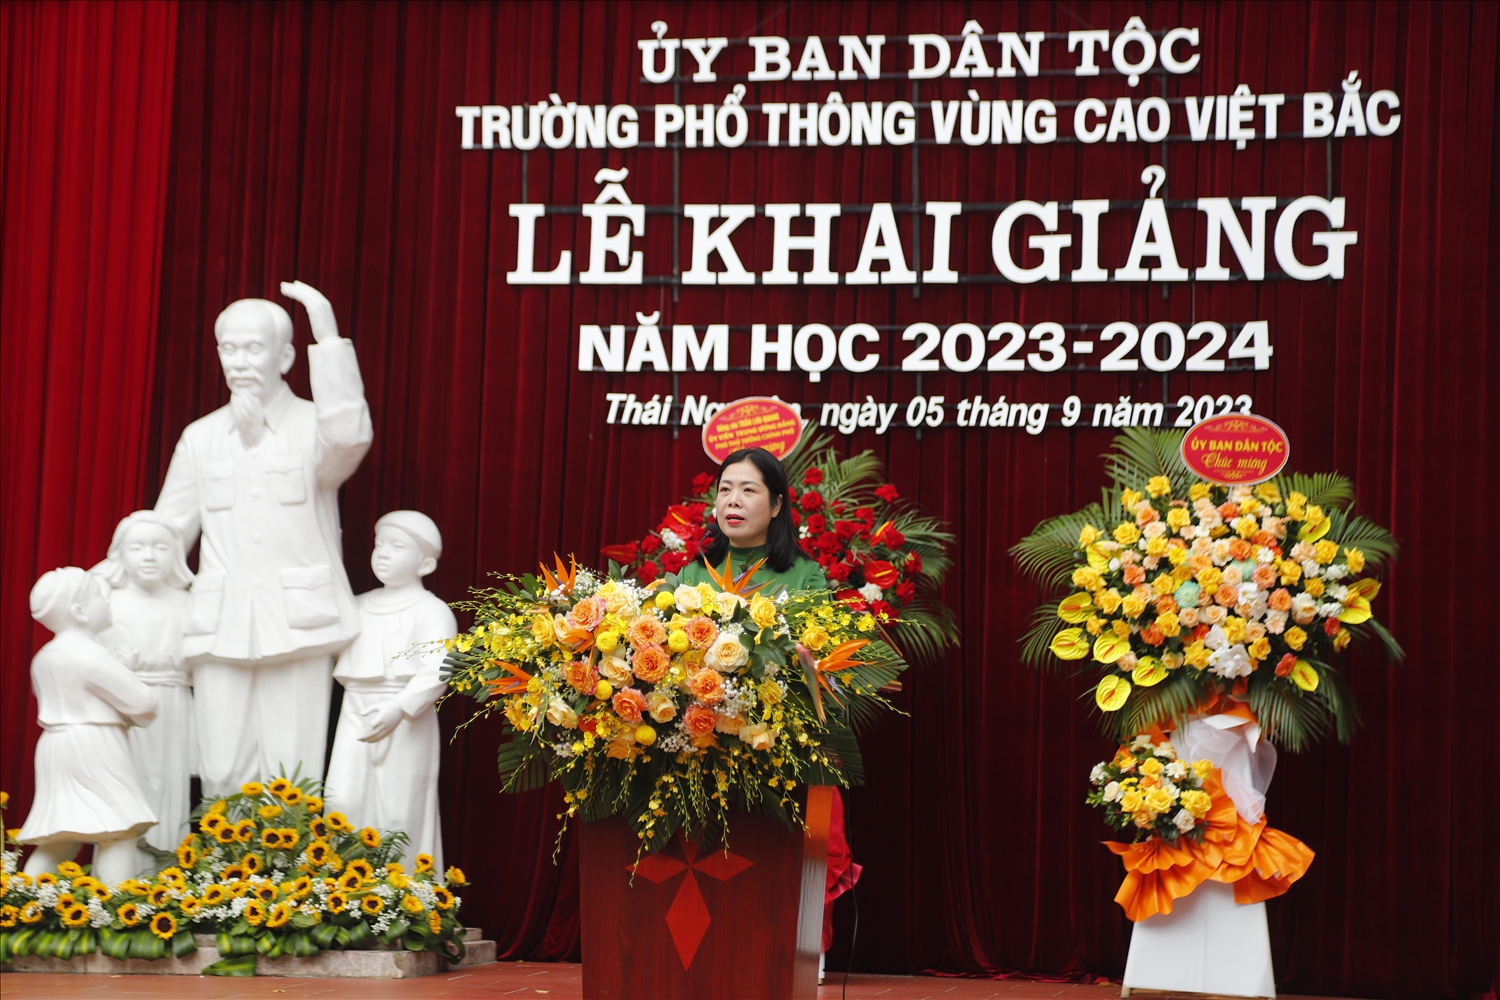 Nhà giáo Lục Thúy Hằng - Hiệu trưởng Trường Phổ thông vùng cao Việt Bắc đọc diễn văn khai giảng năm học 2023-2024